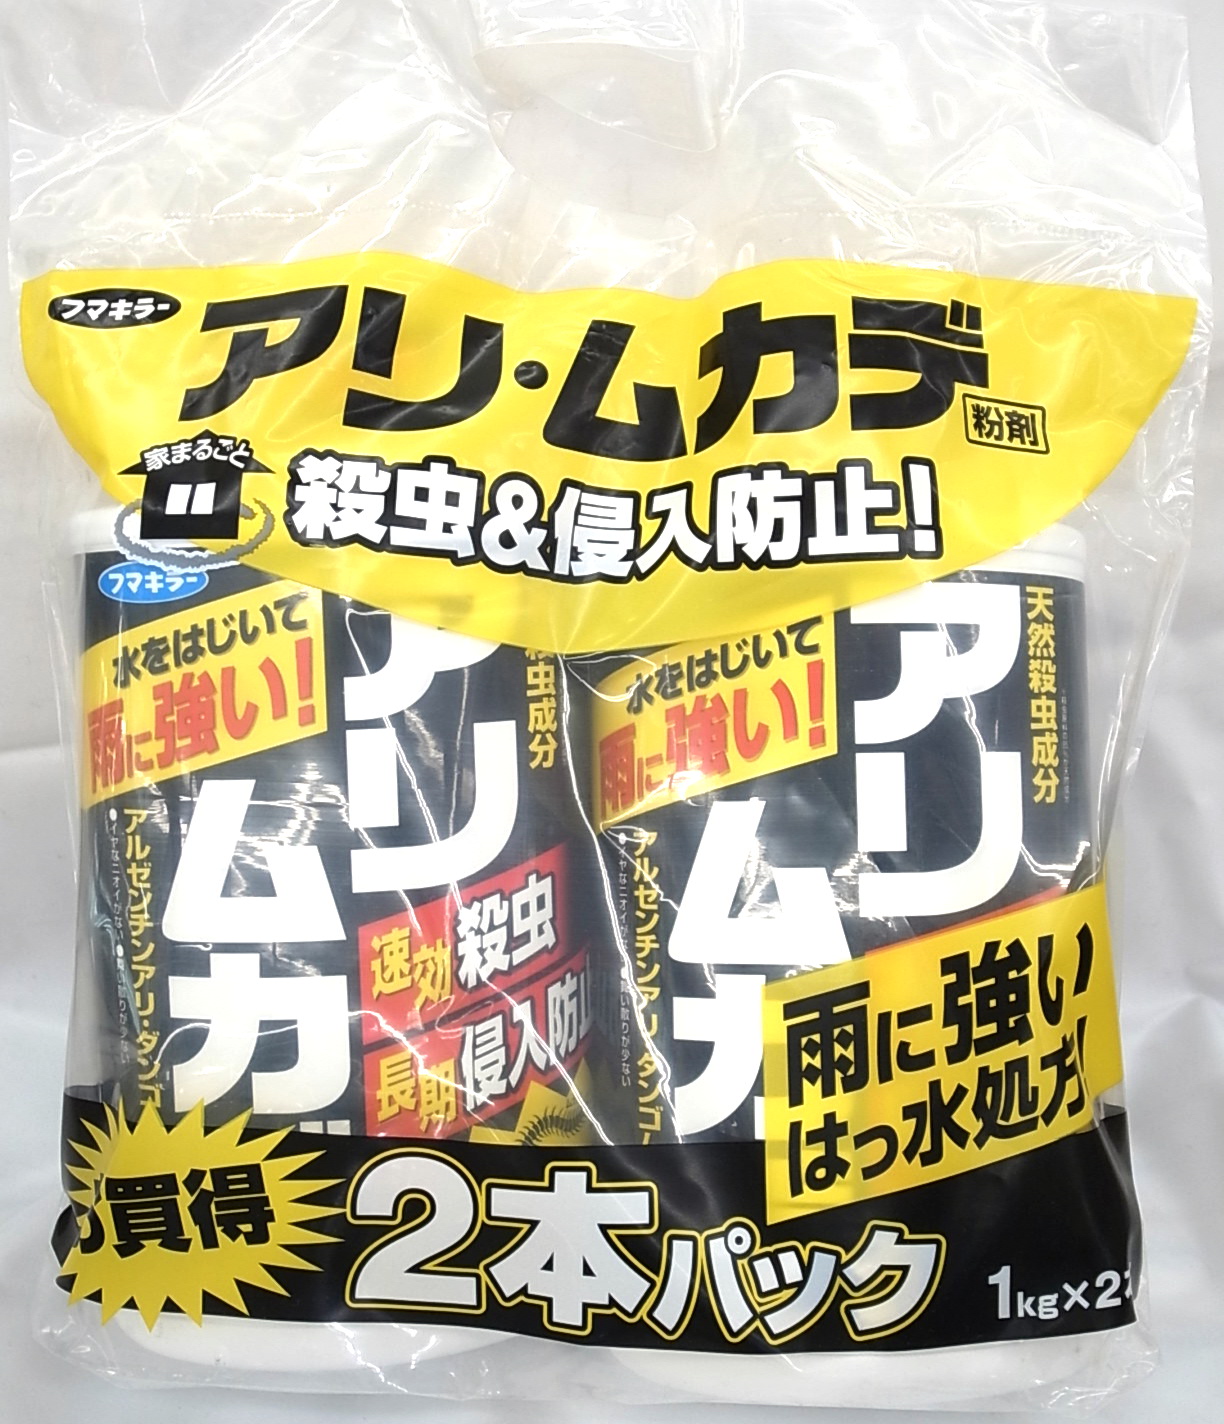 160円 【オープニング フマキラー アリ ムカデ粉剤 1kg